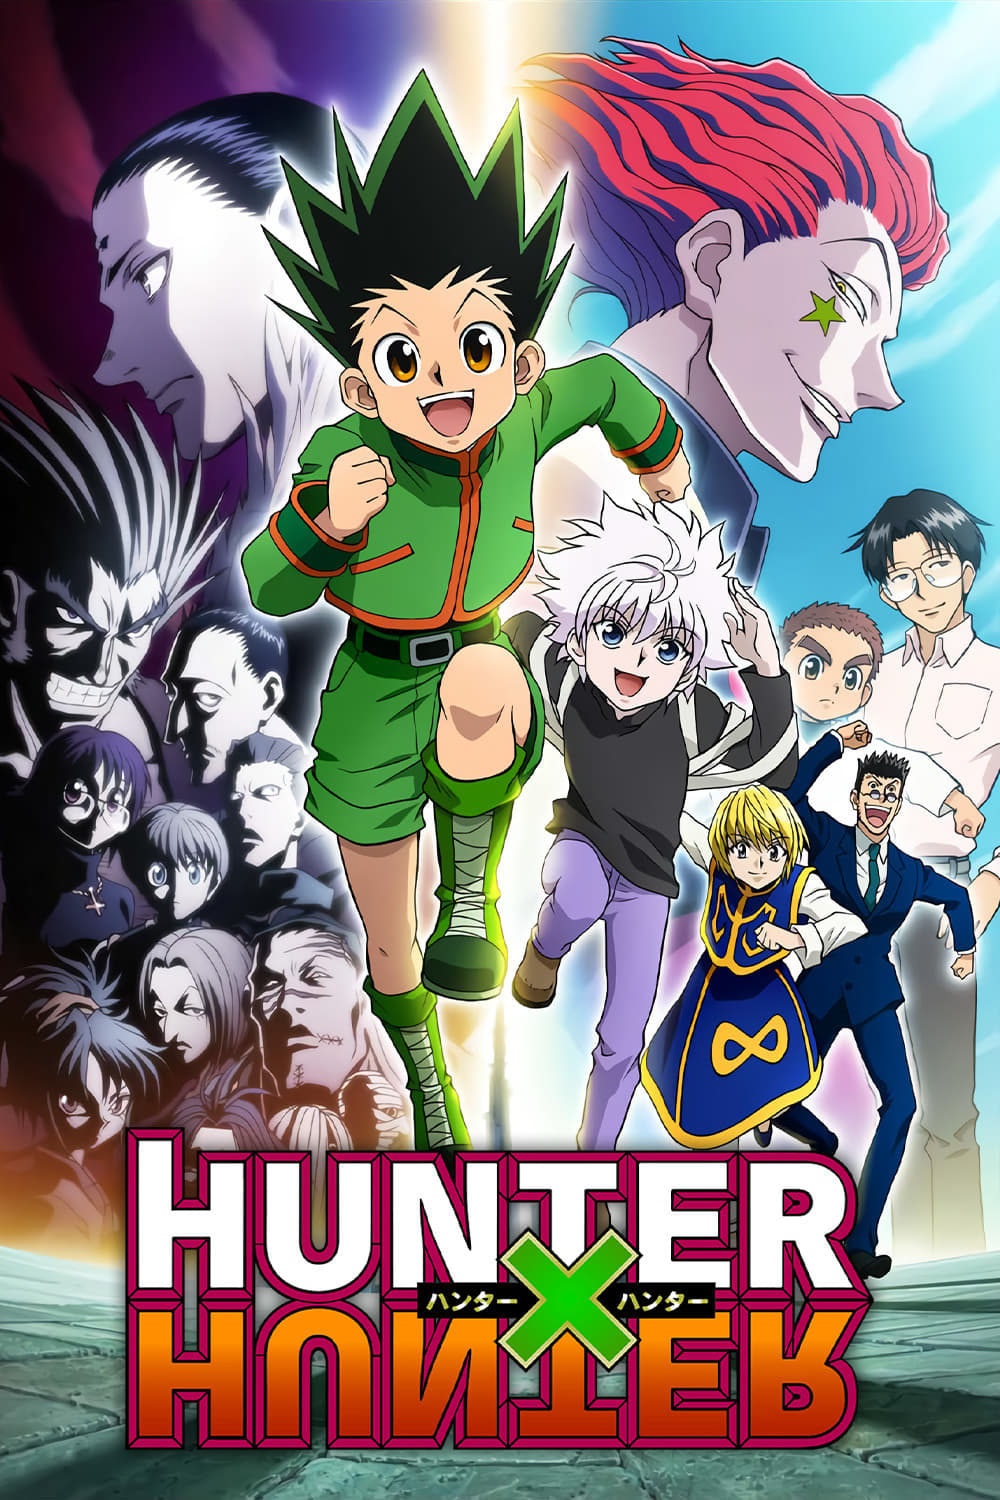 Hoje acabou de estrear o anime Hunter X Hunter (2011) na Netflix com  dublagem BR HUNTER - iFunny Brazil